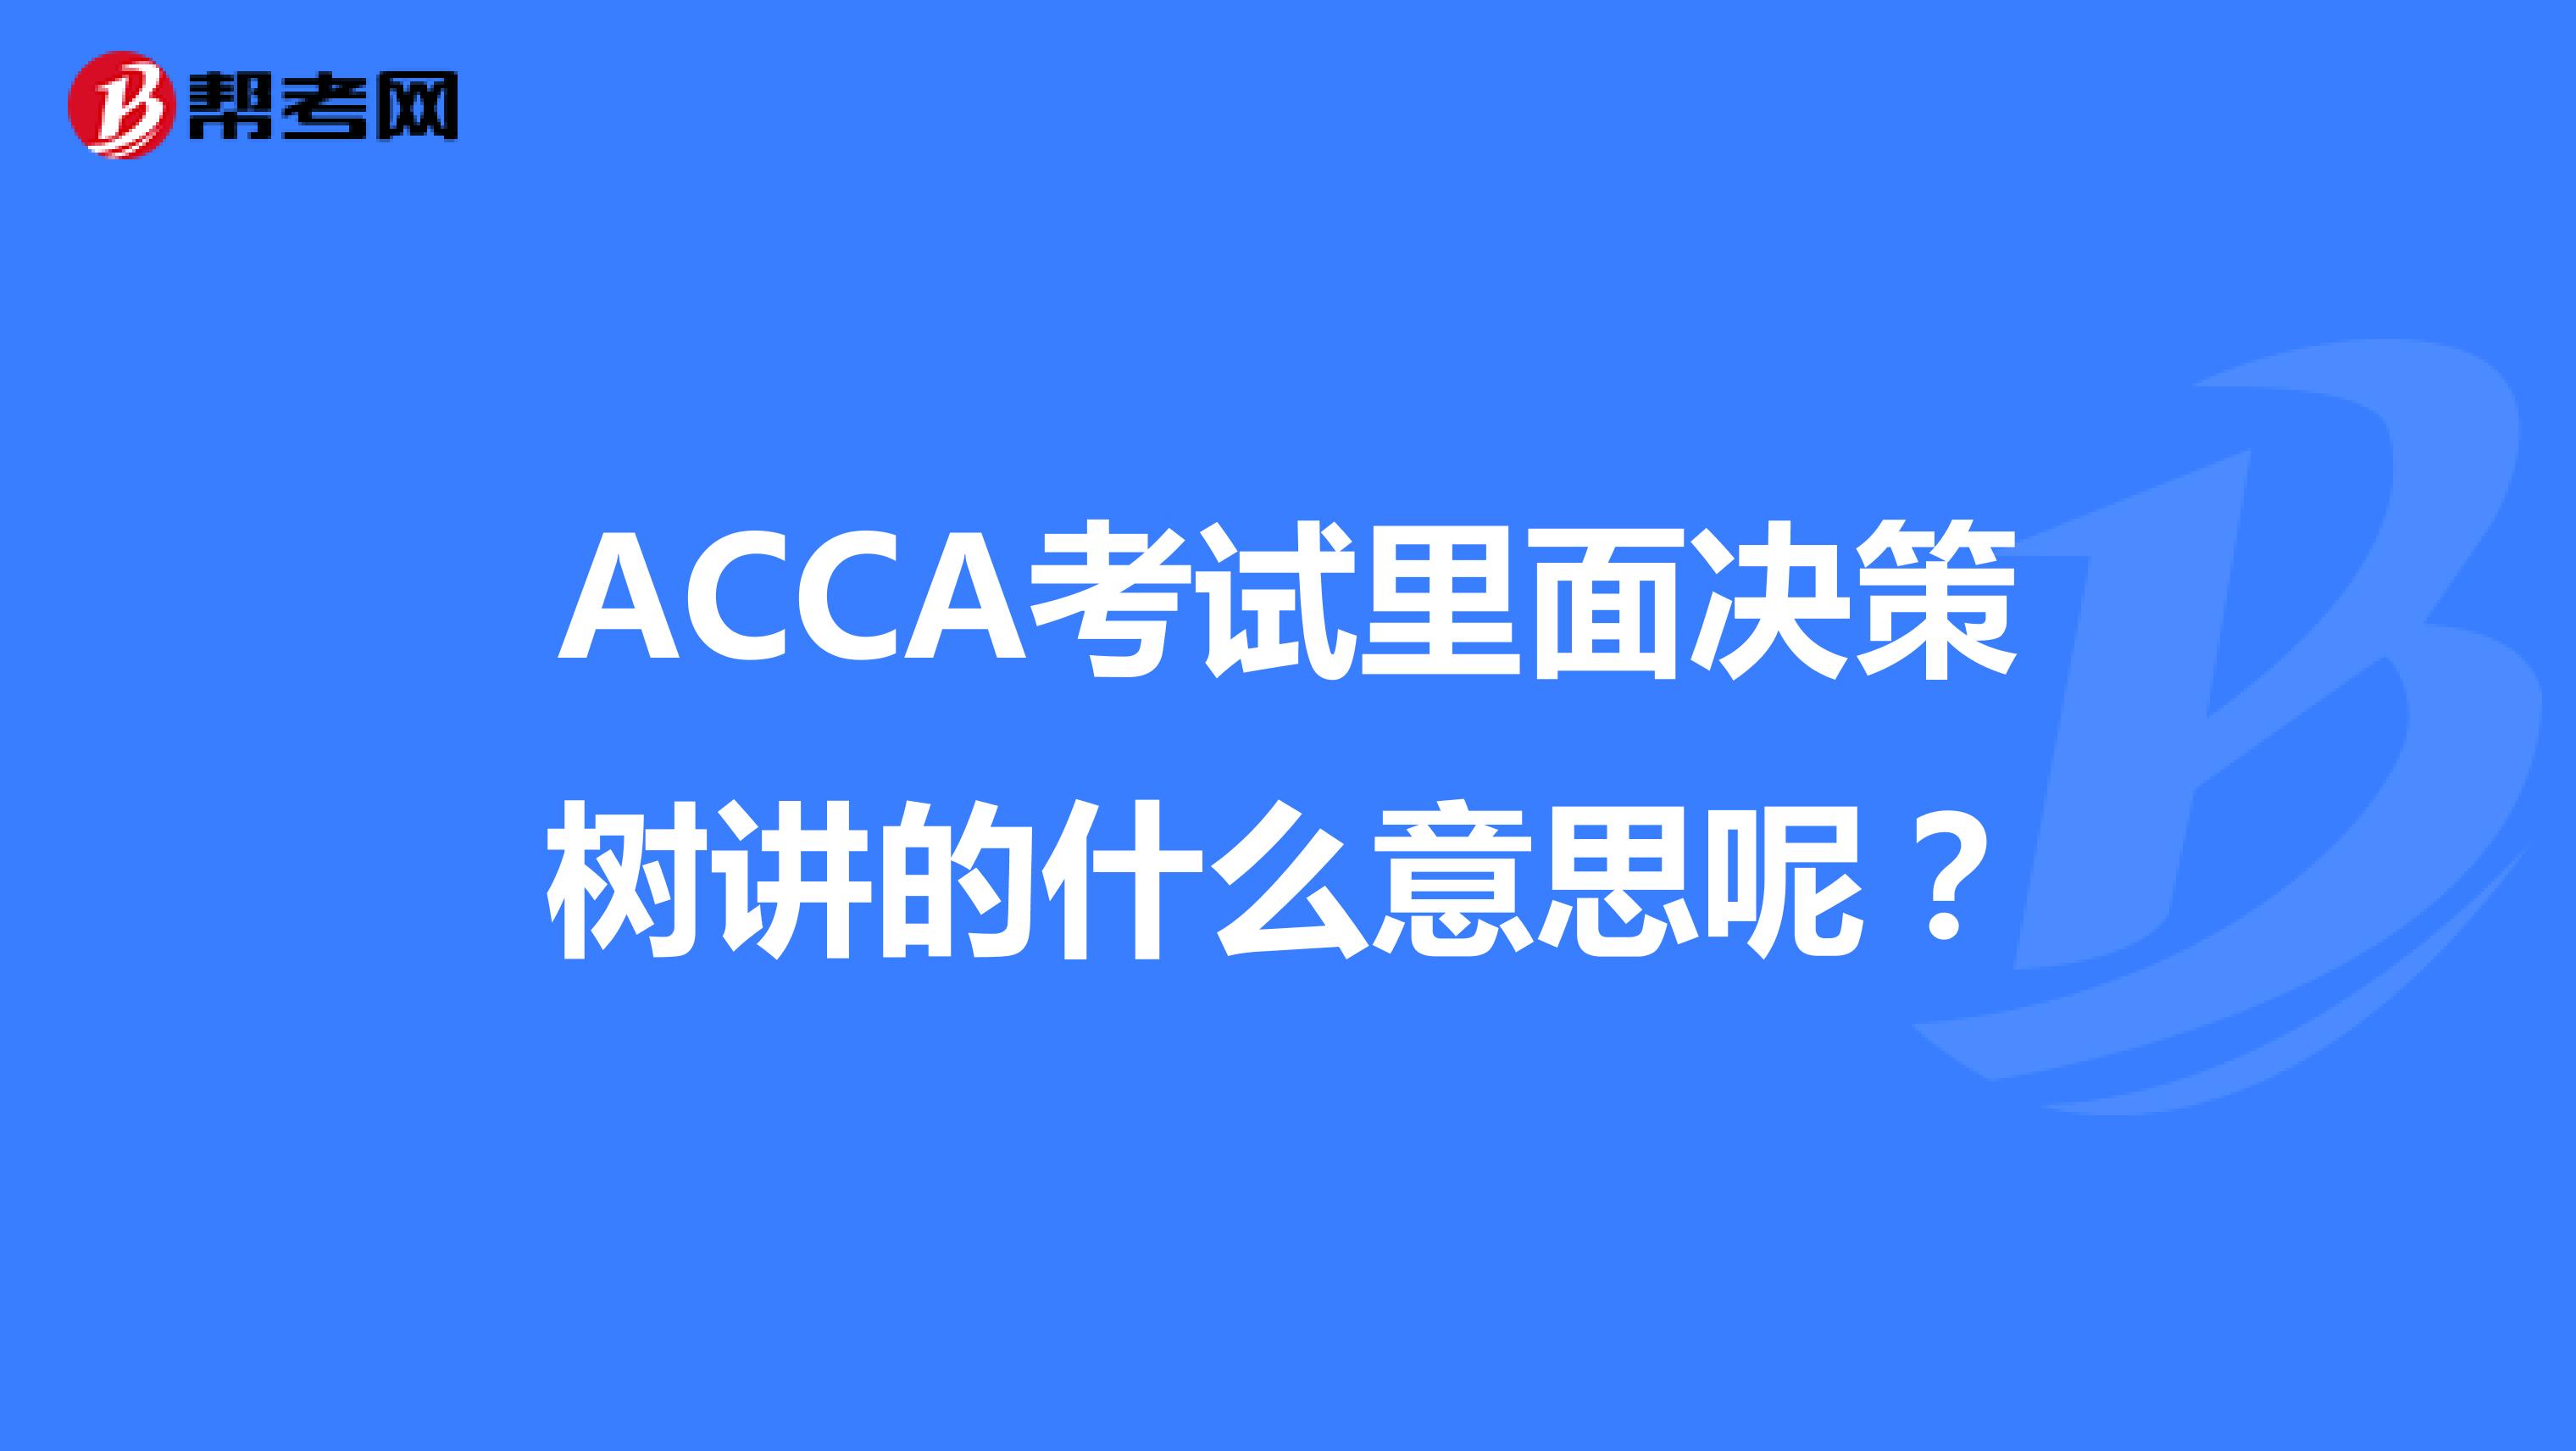 ACCA考试里面决策树讲的什么意思呢？